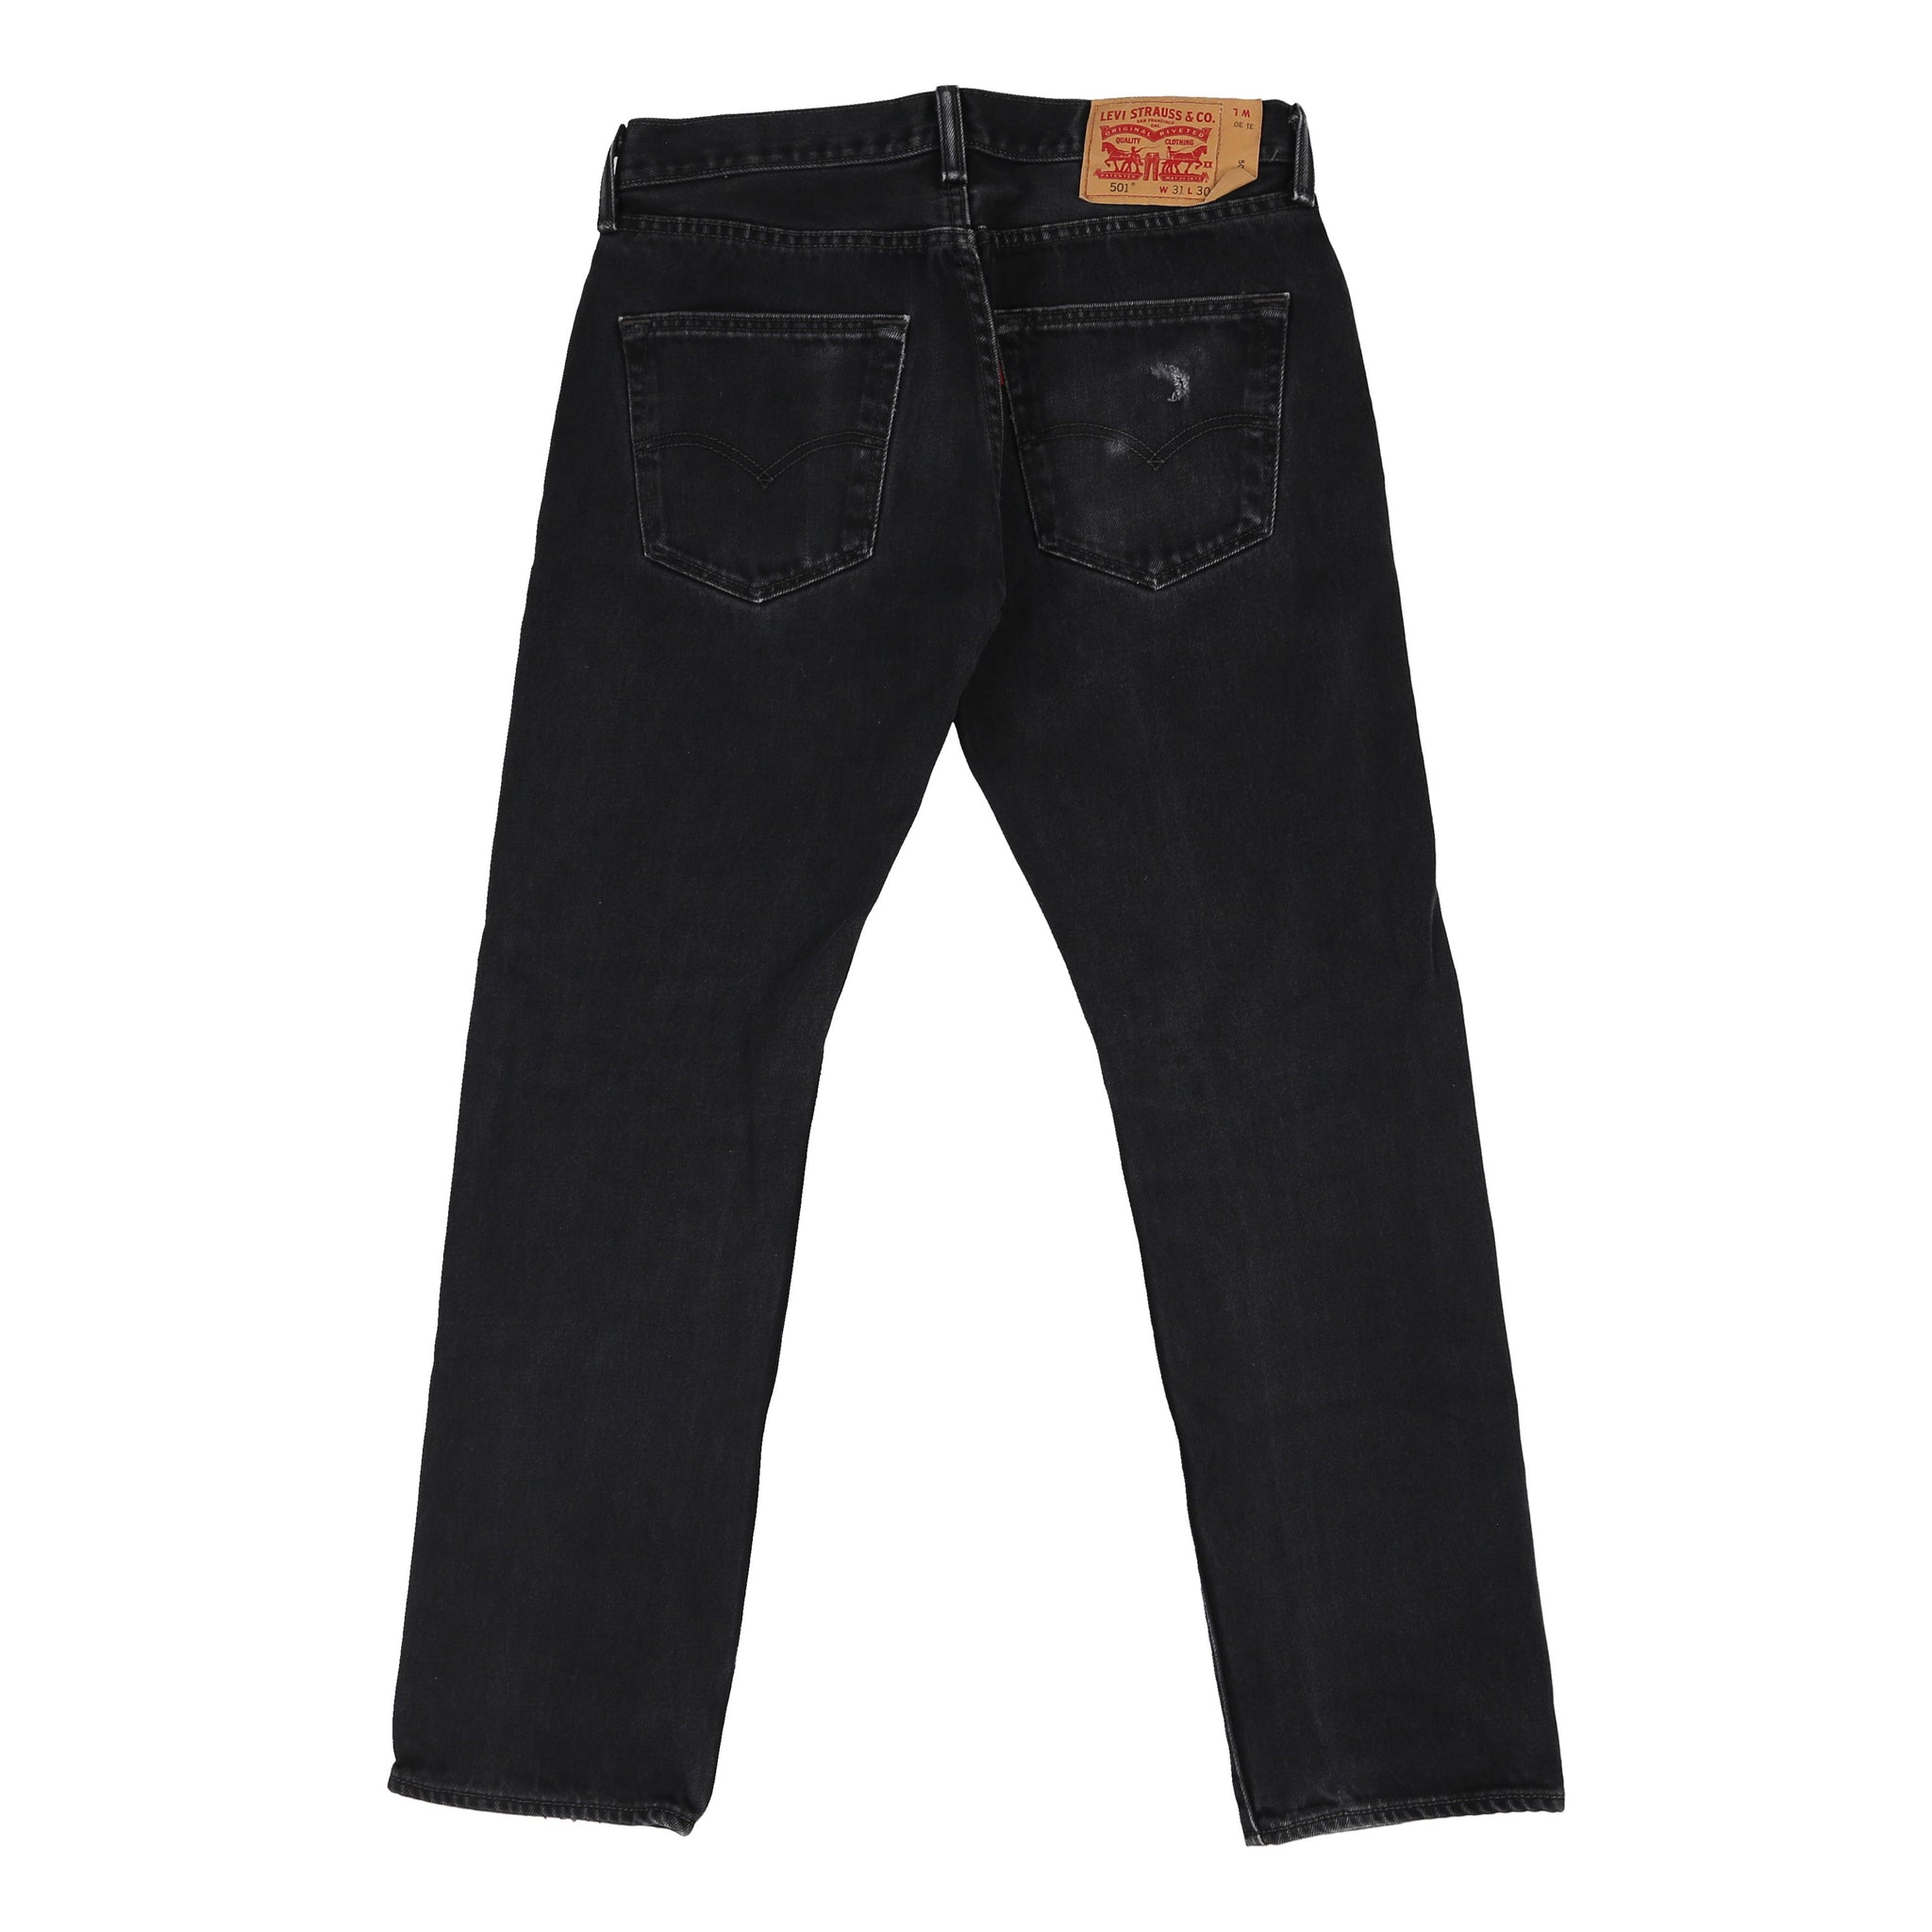 Levis 501 Denim Jeans